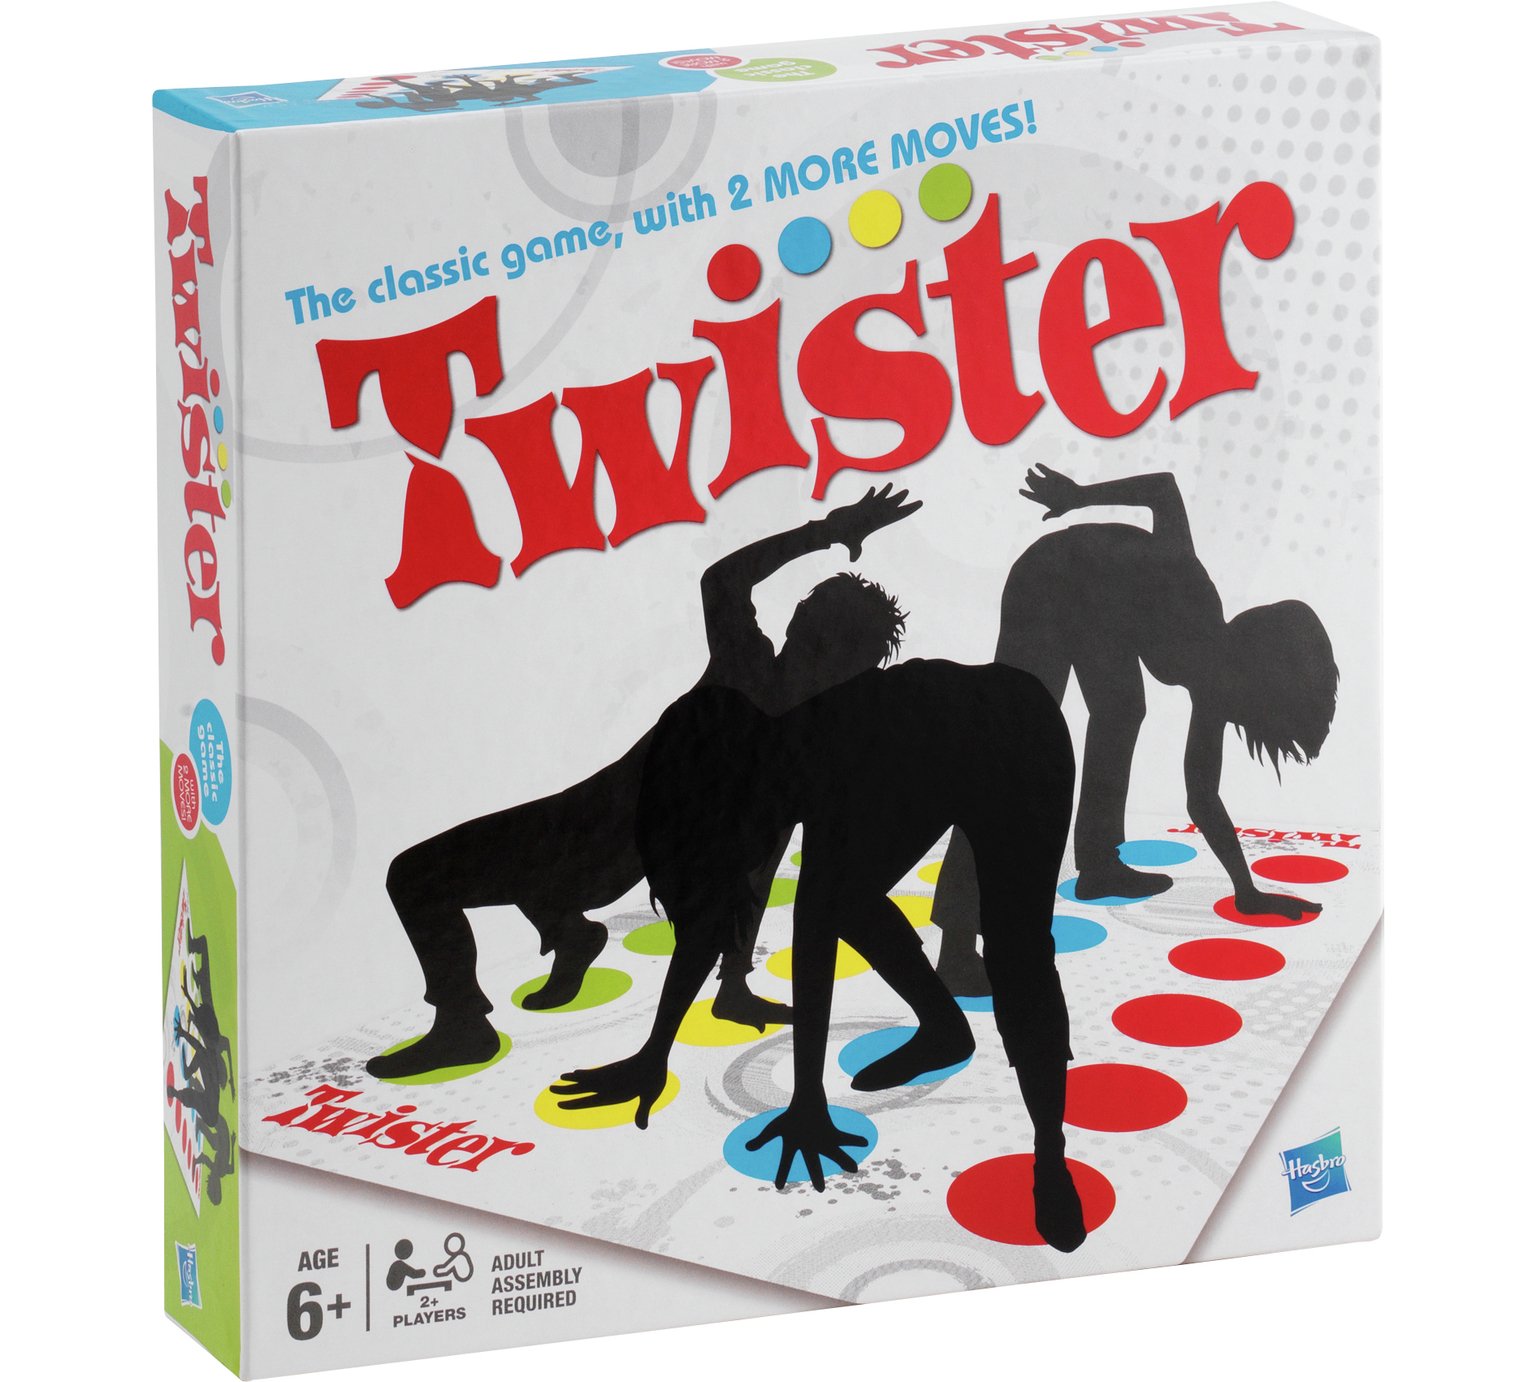 Twister 2 Aw